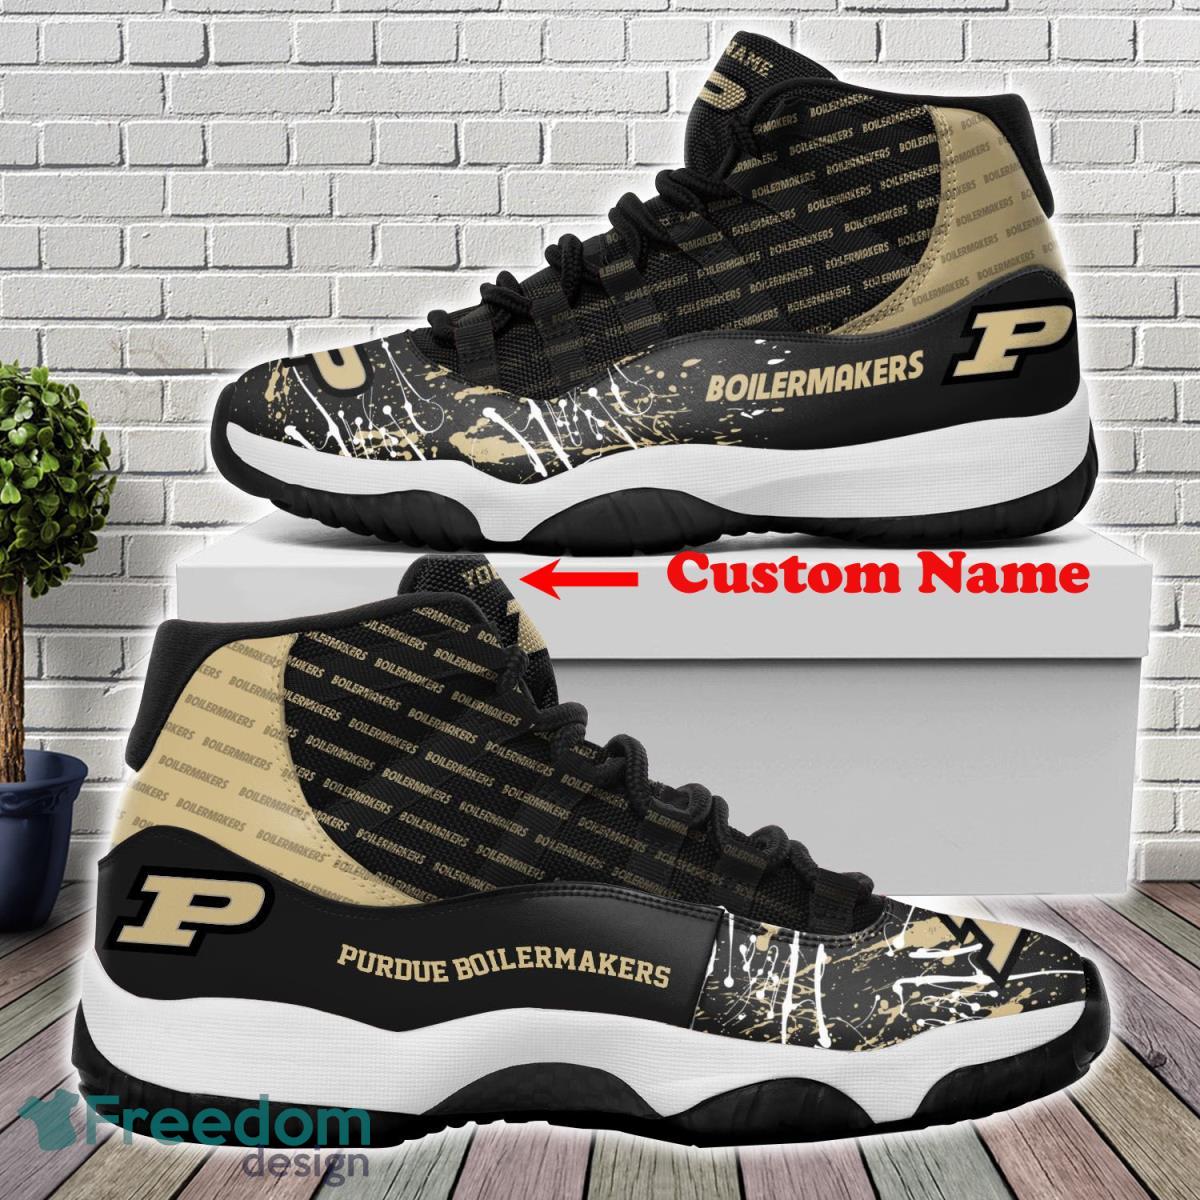 Purdue Boilermakers Custom Name Air Jordan 11 Shoes